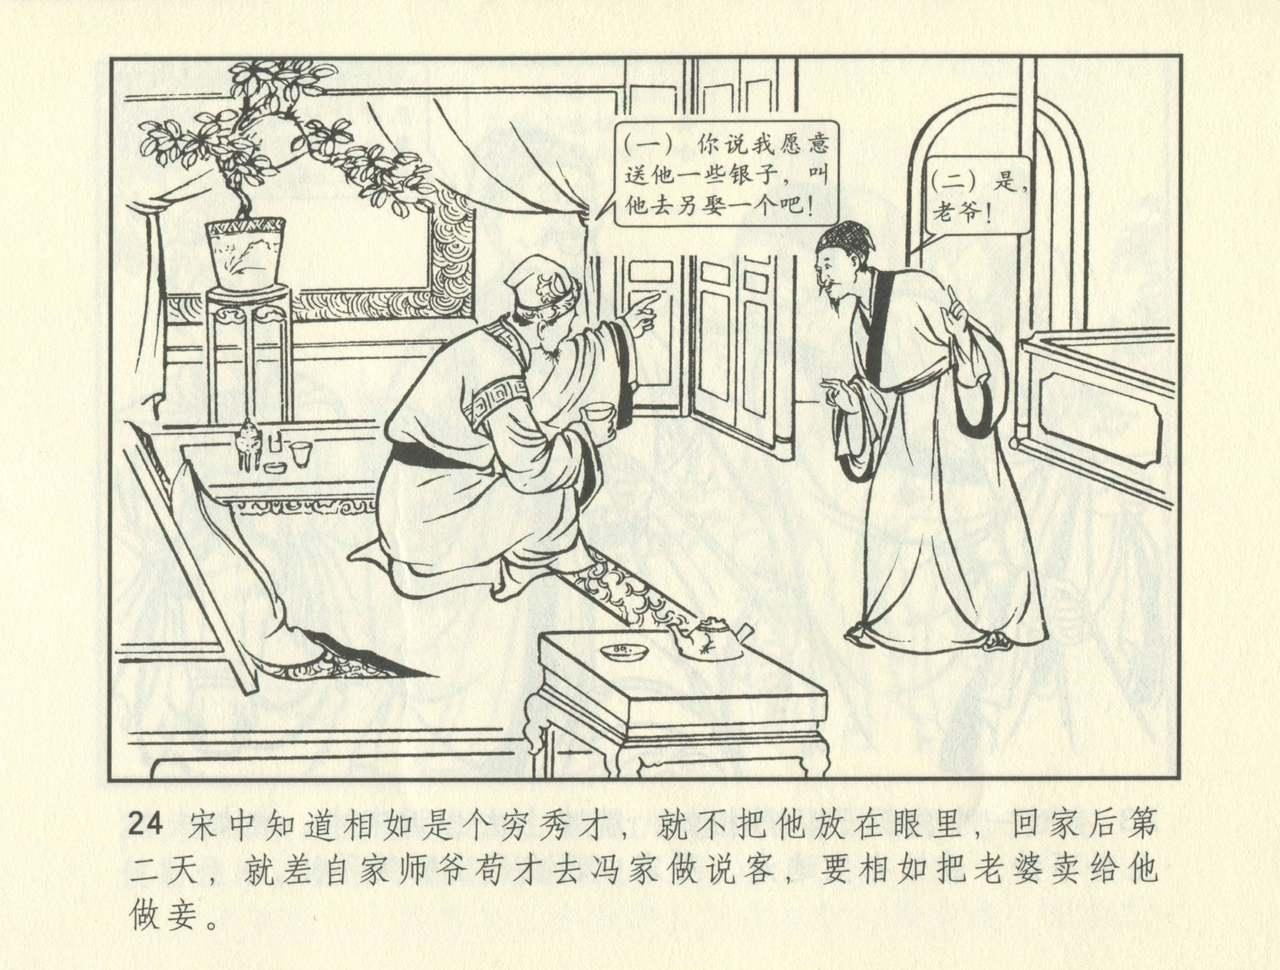 聊斋志异 张玮等绘 天津人民美术出版社 卷二十一 ~ 三十 364